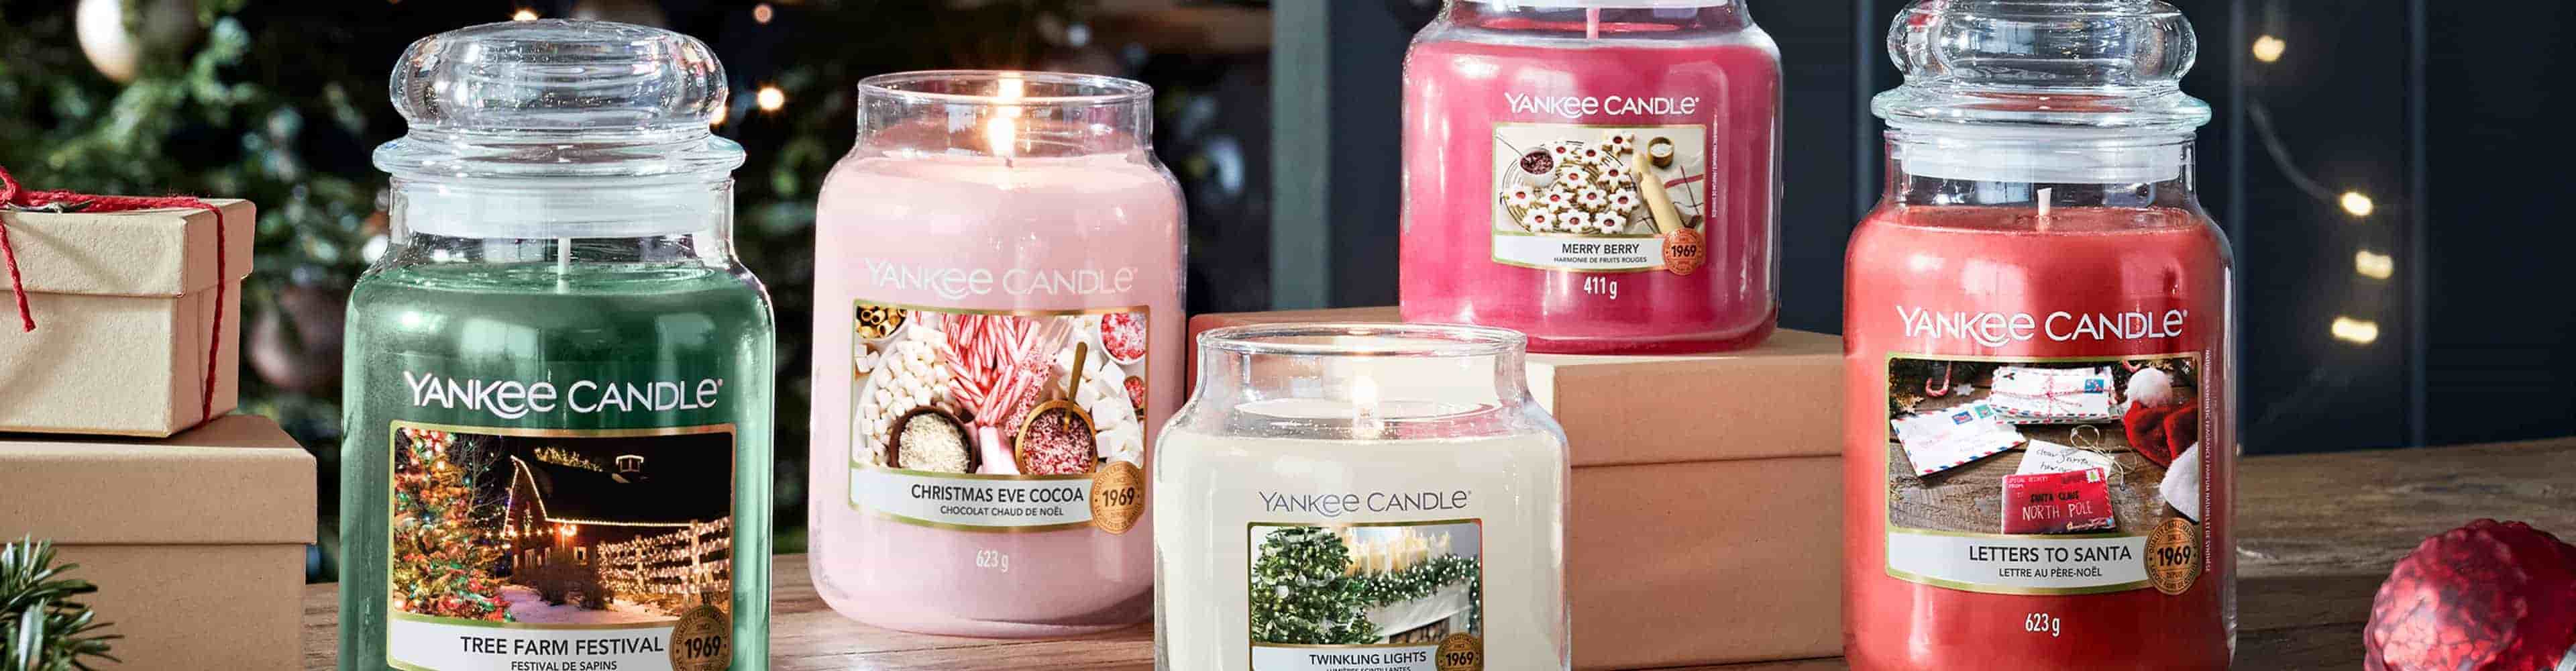 Candleoutlet: il più grande negozio di candele d'Europa